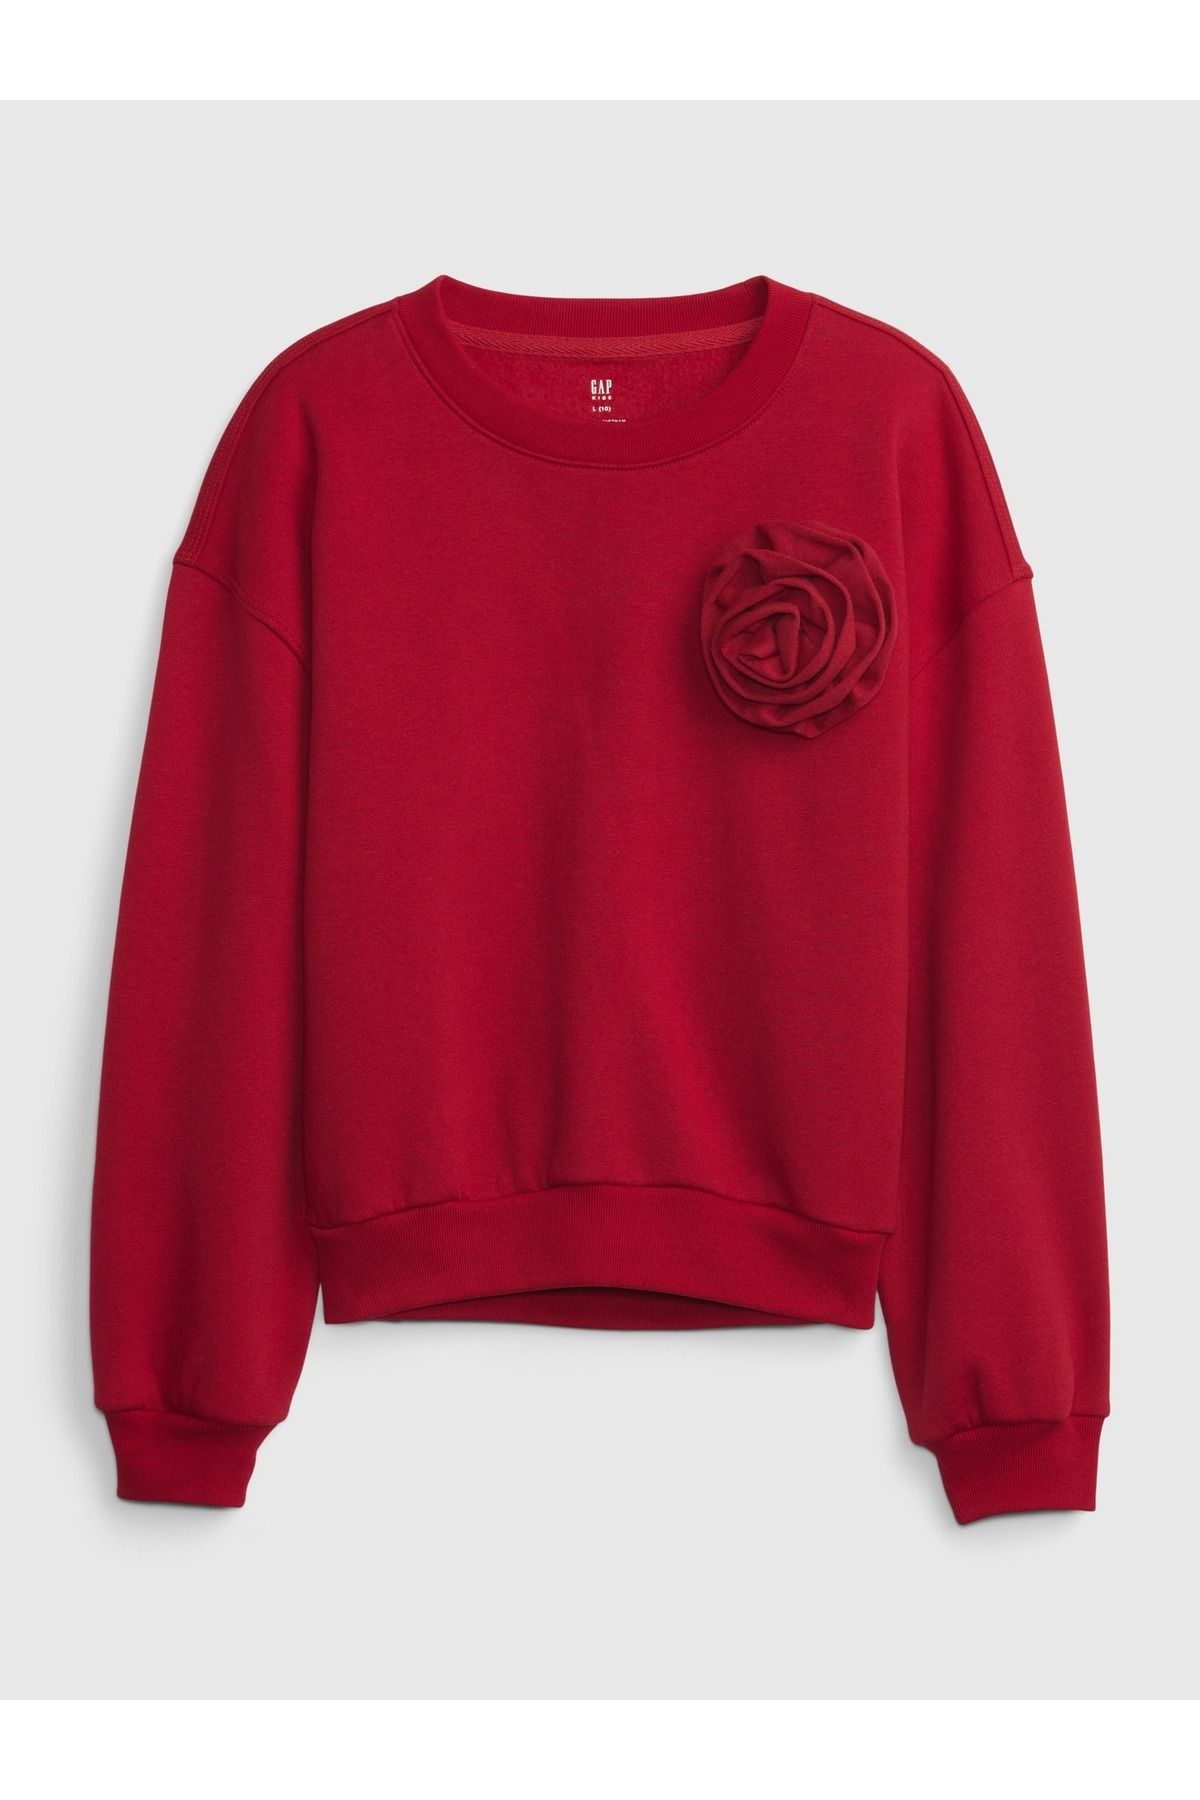 GAP Kız Çocuk Kırmızı Çiçek Motifli Sweatshirt